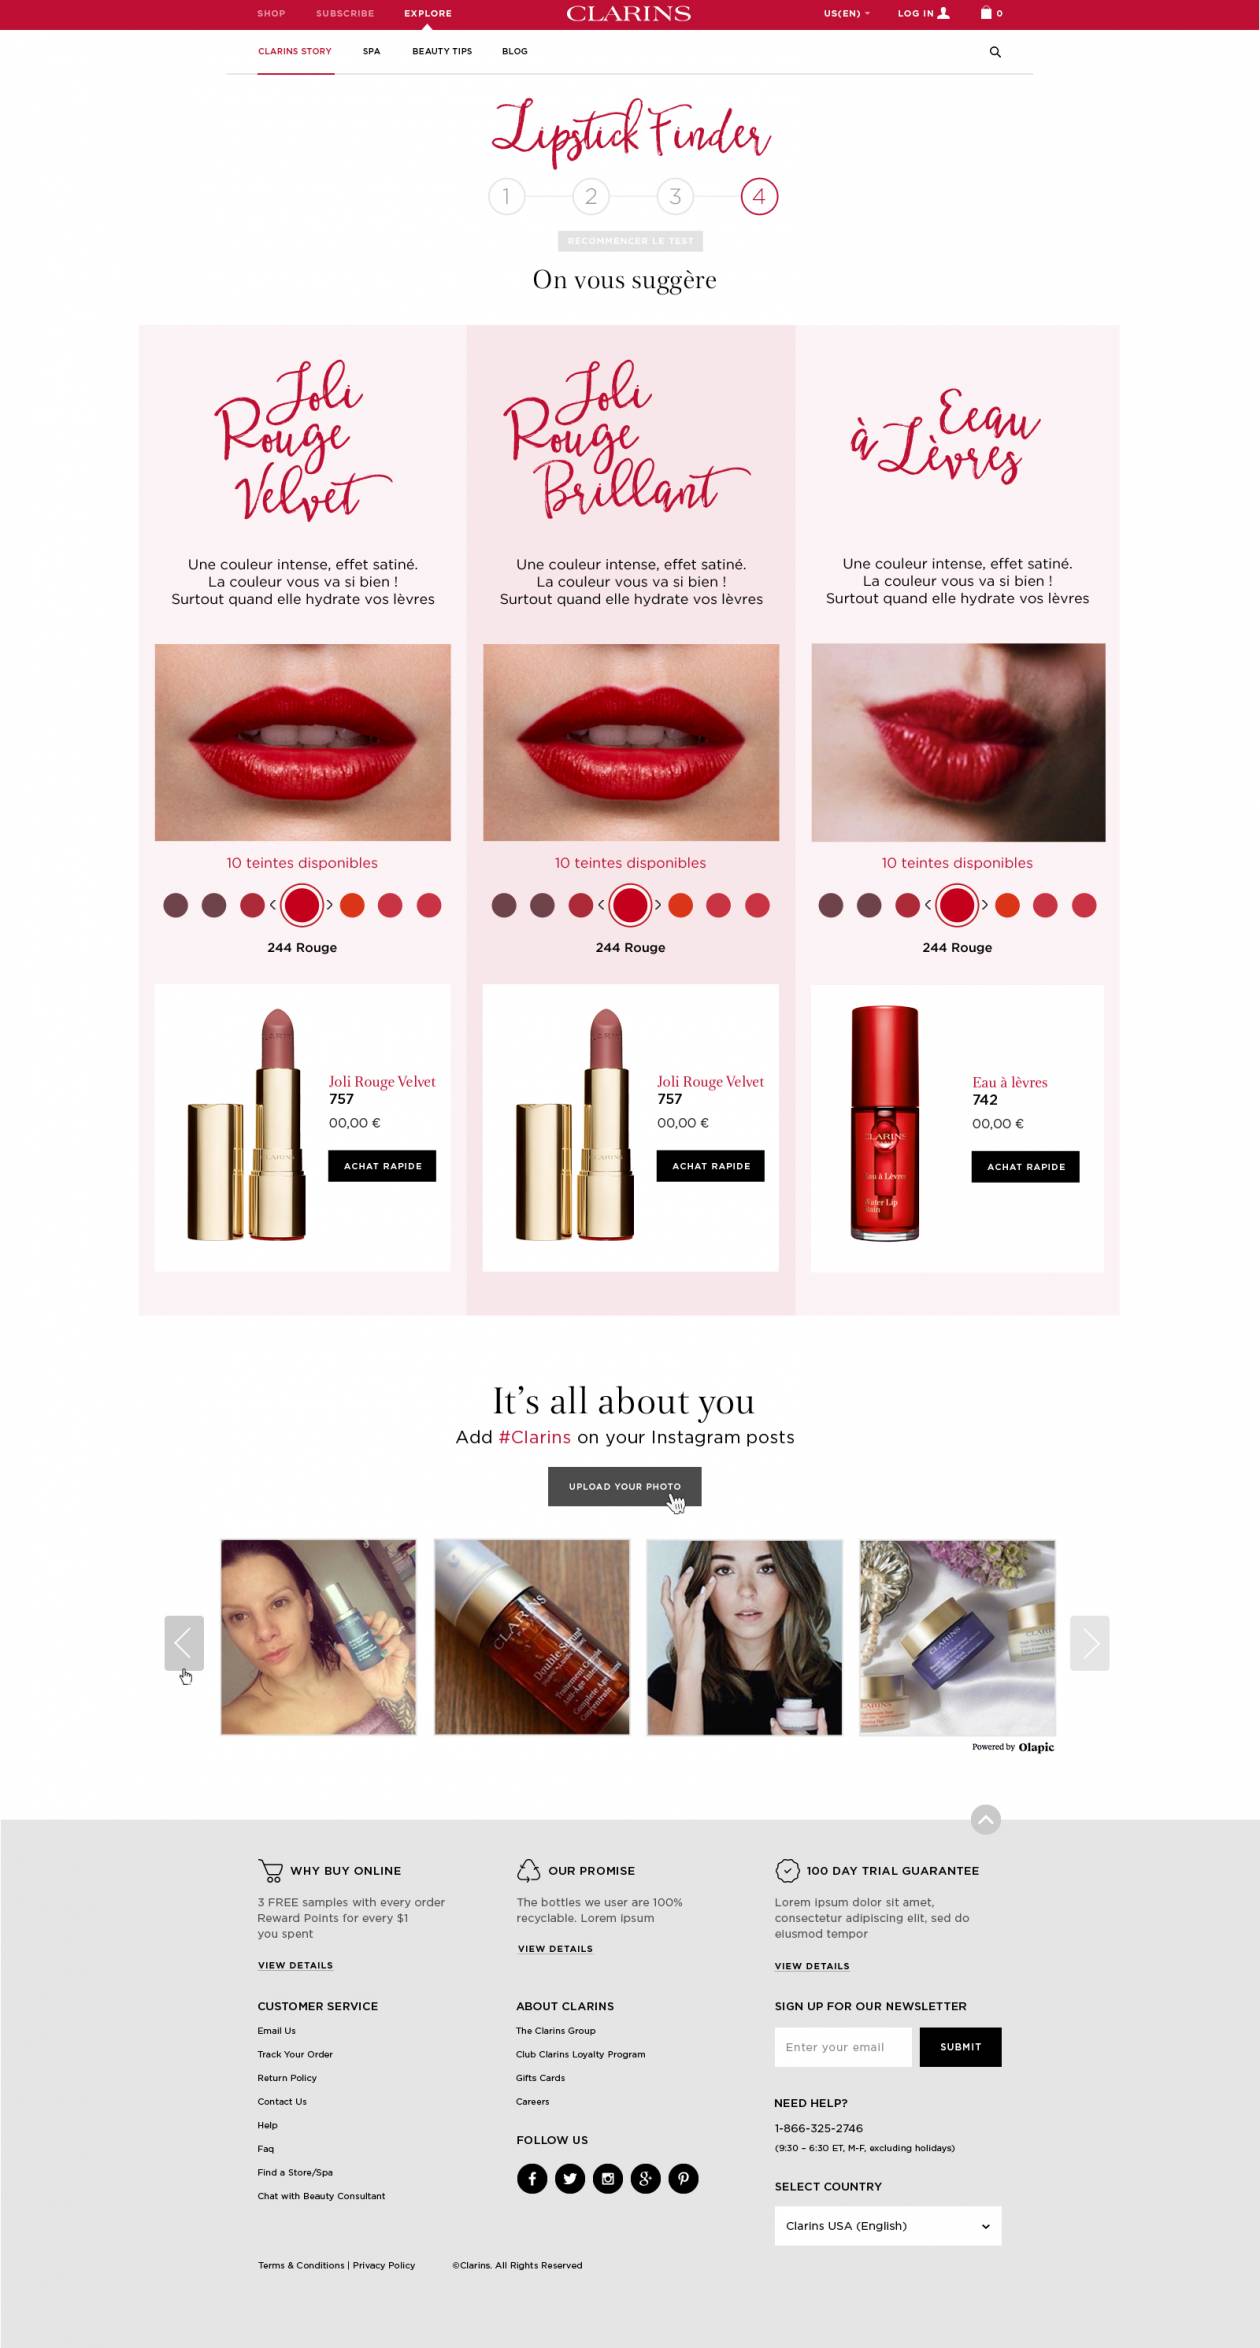 Lipstick Finder Results